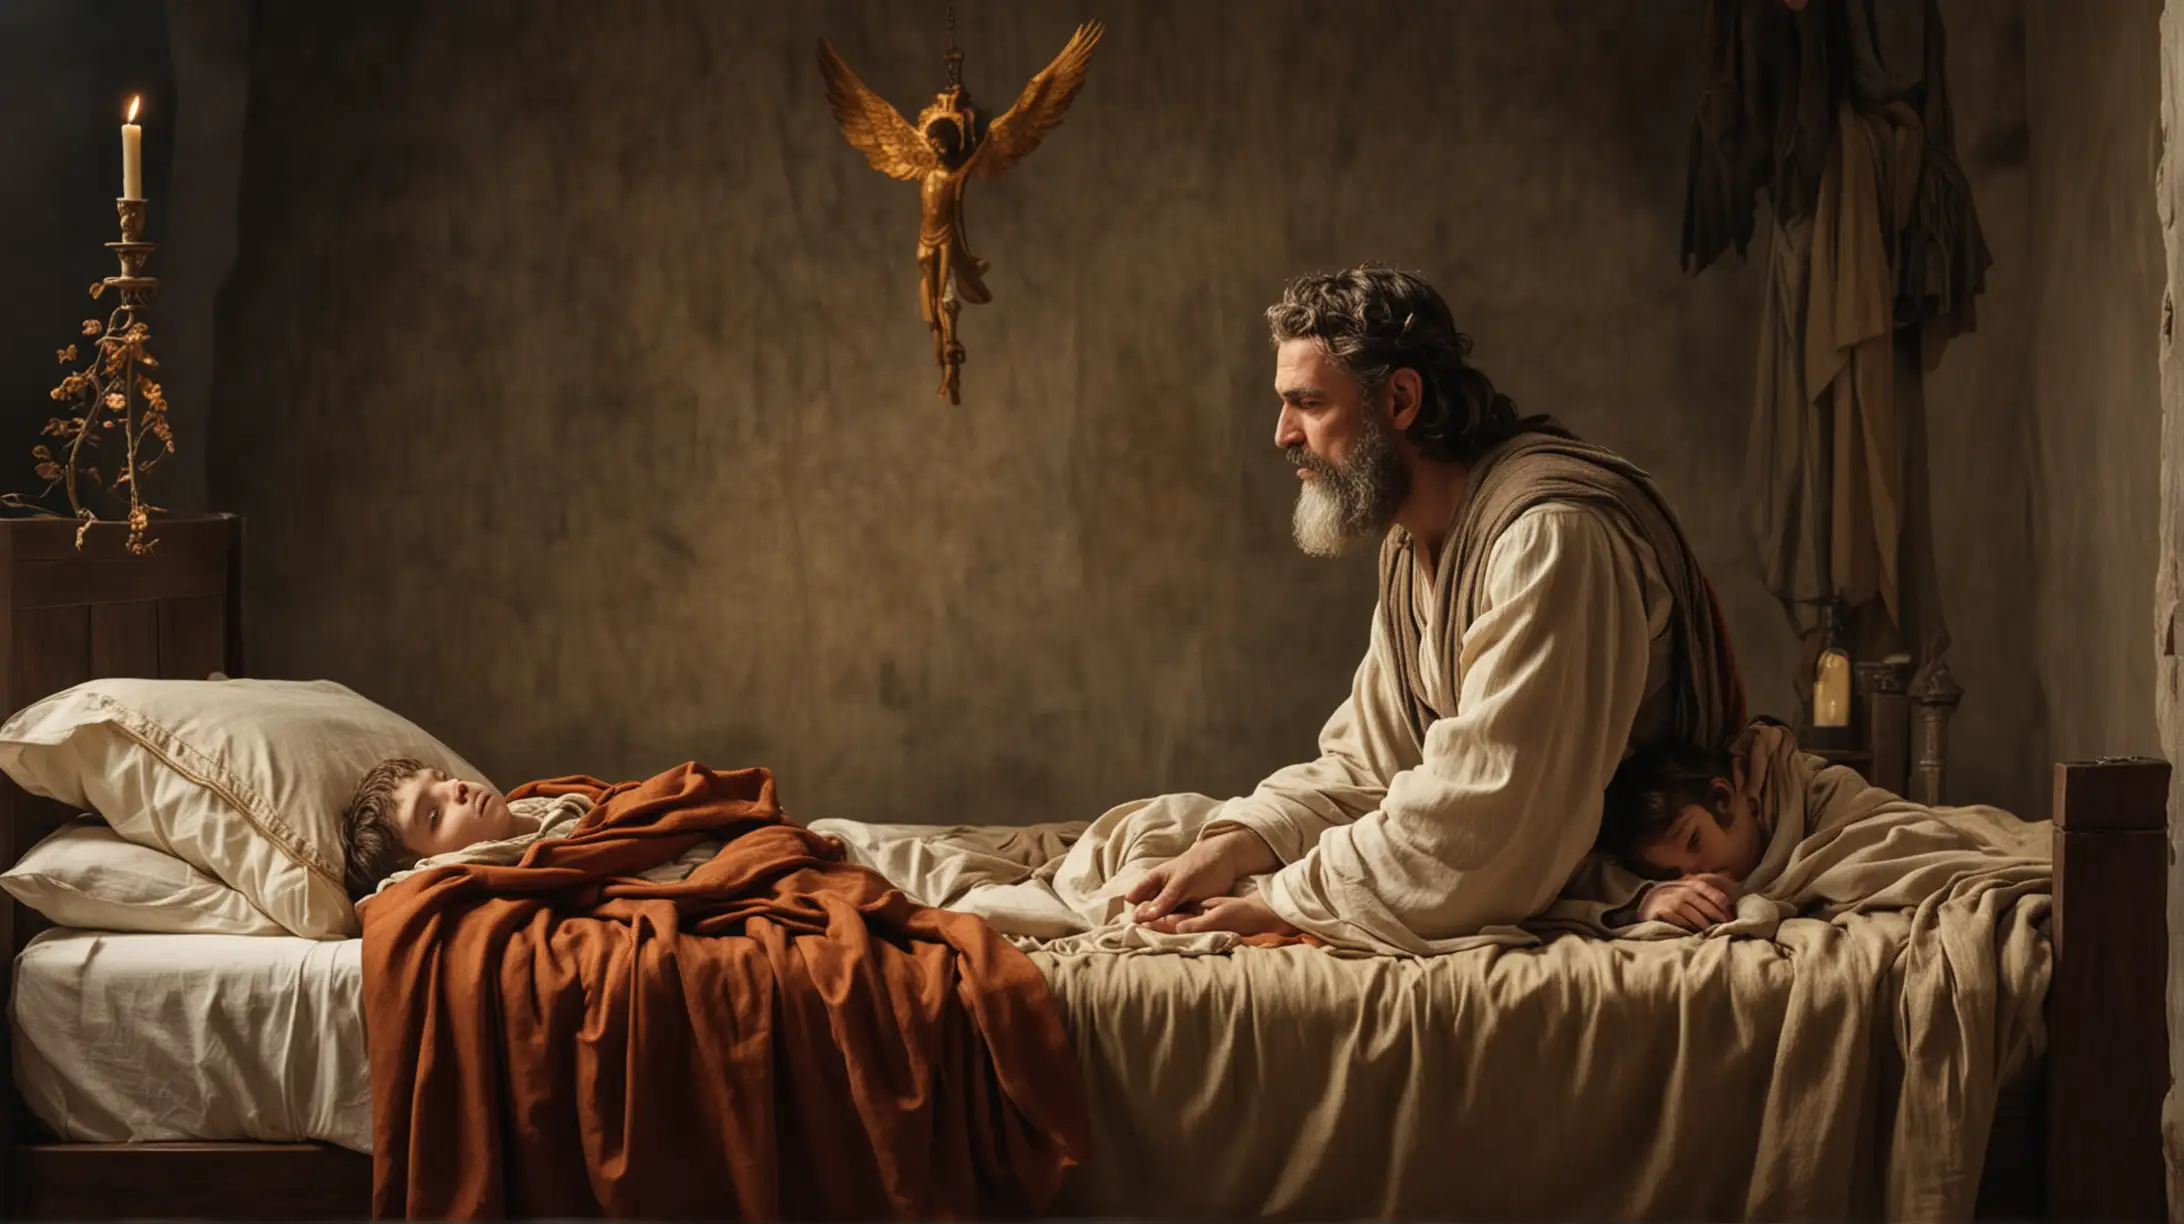 Biblical Prophet Elijah Praying for Healing of Sick Boy on Bed